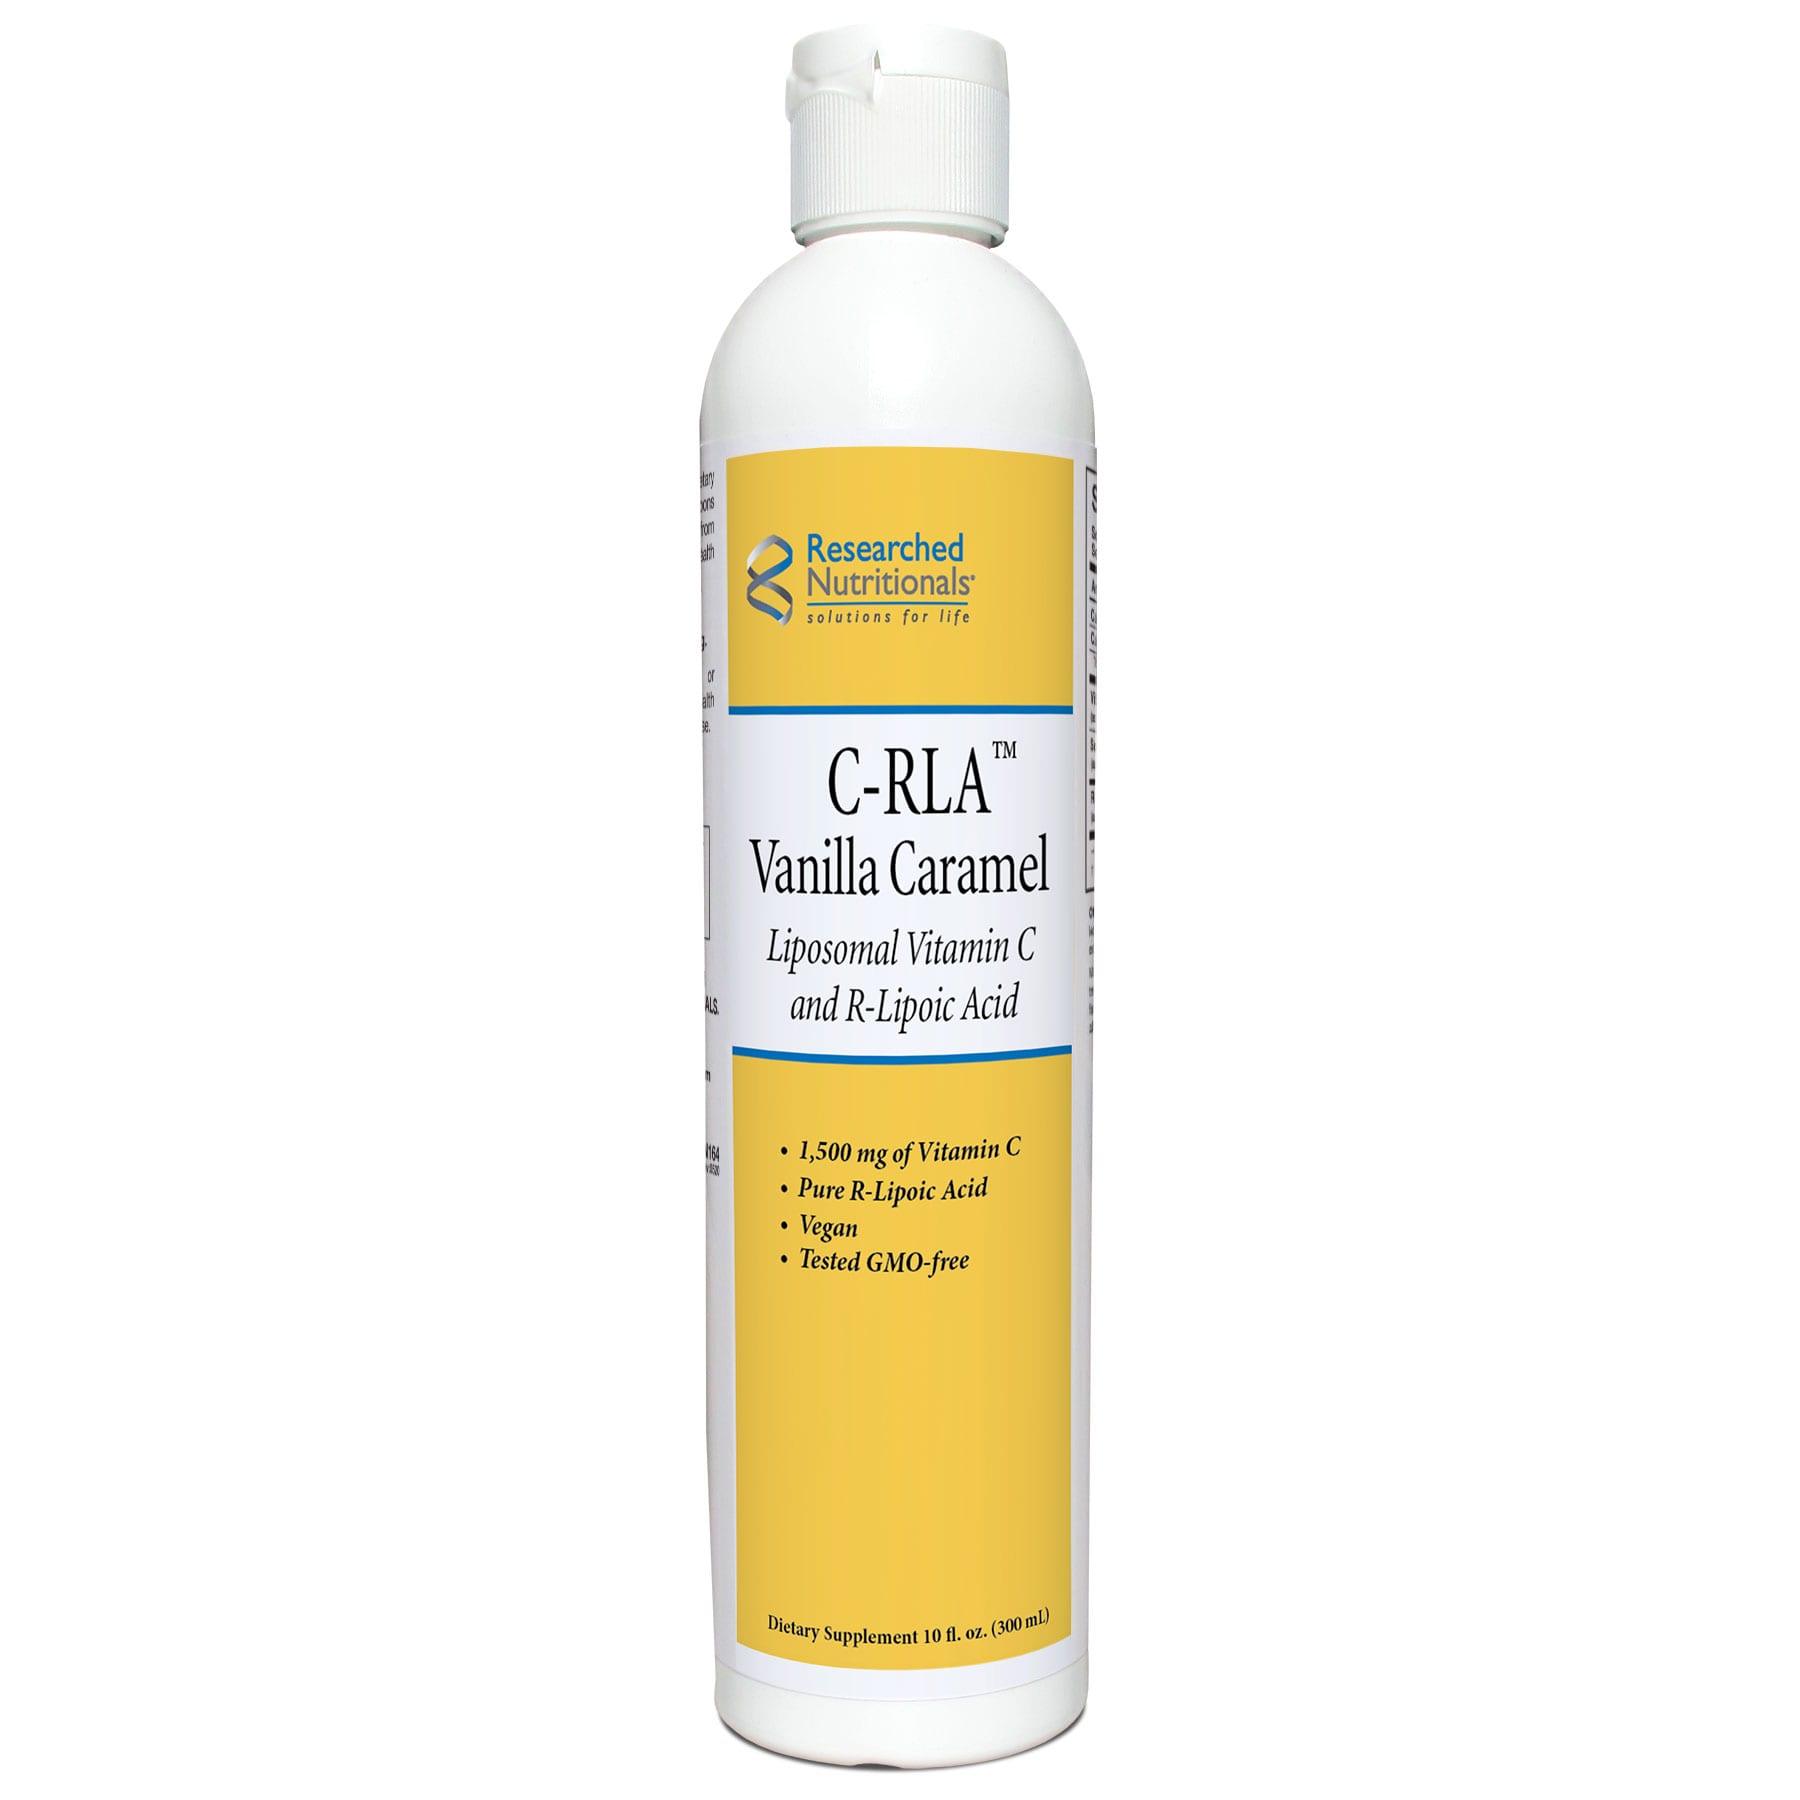 C-RLA-Vanilla-Caramel 10 fl oz (300 ml)